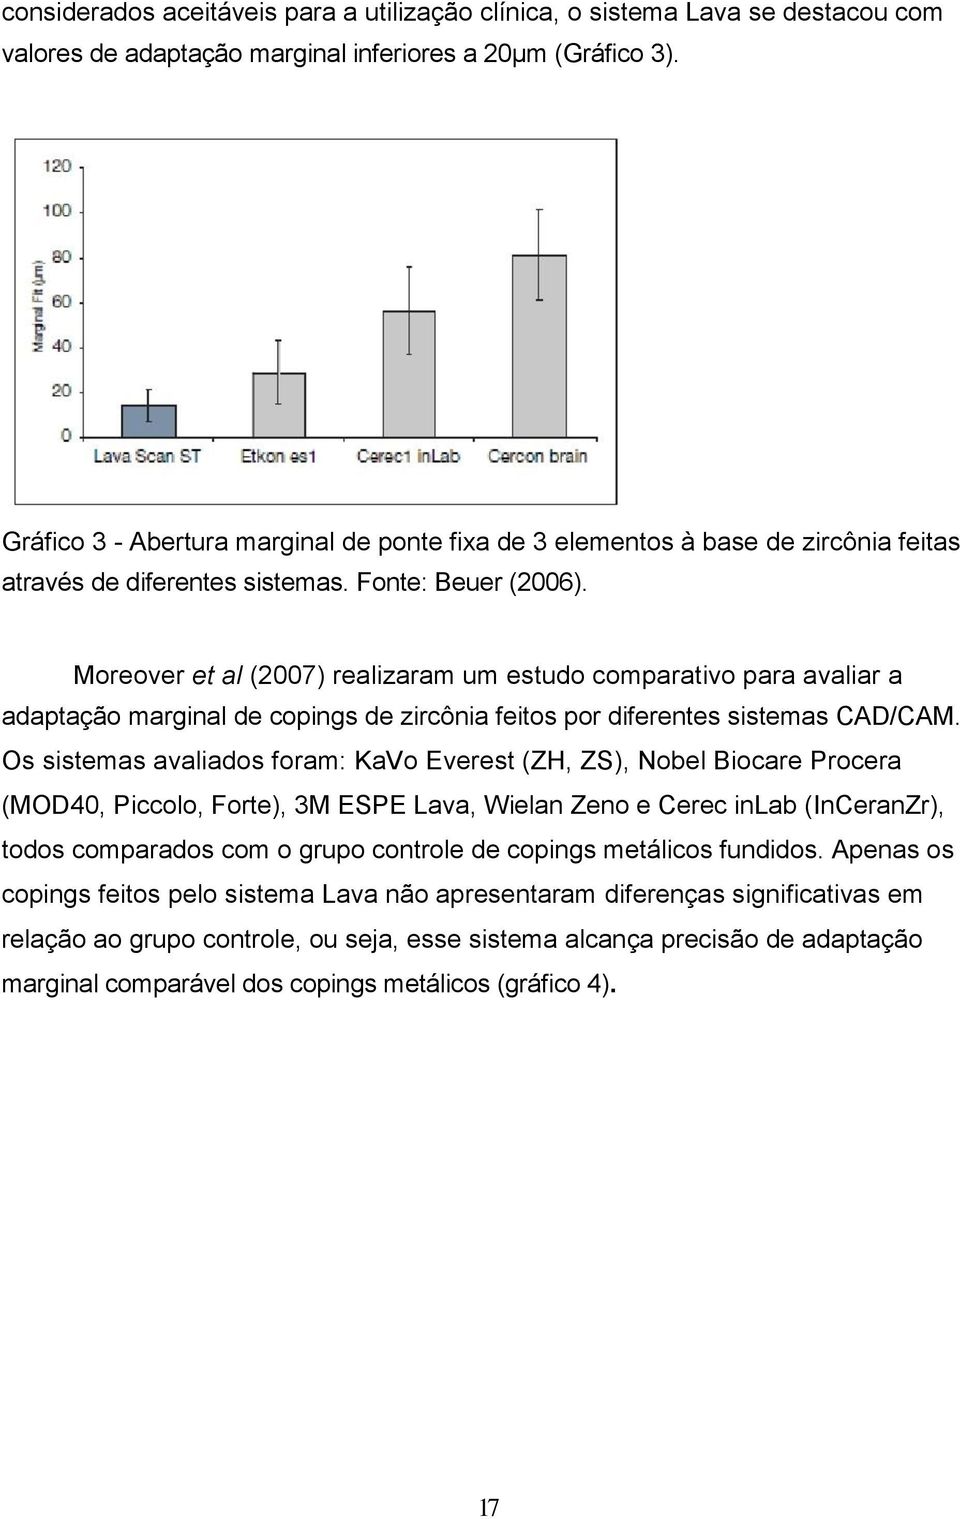 Moreover et al (2007) realizaram um estudo comparativo para avaliar a adaptação marginal de copings de zircônia feitos por diferentes sistemas CAD/CAM.